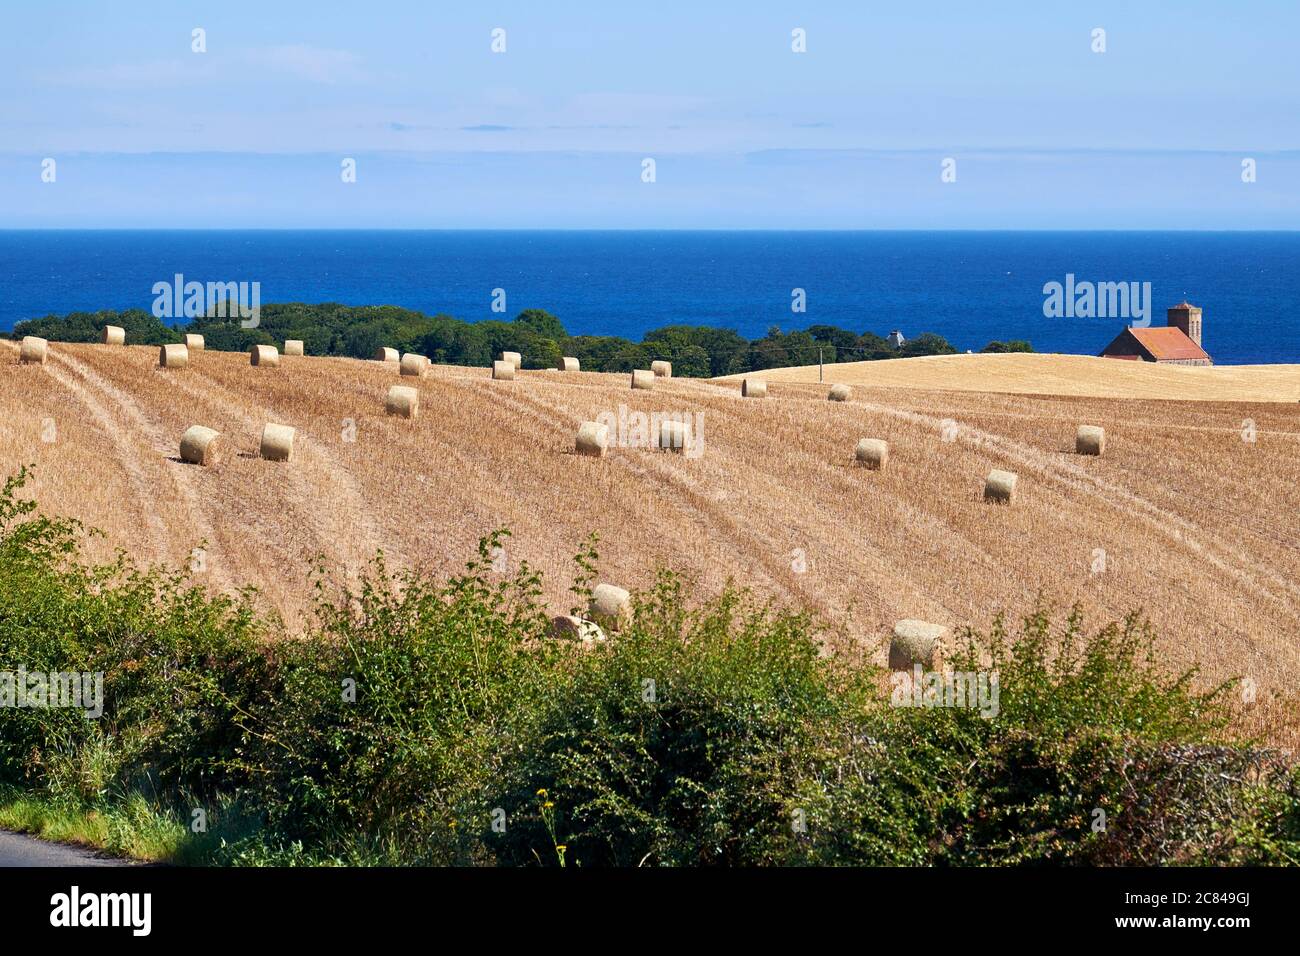 Paesaggio agricolo in un ambiente costiero di balle di fieno su terreno agricolo con casa e mare sullo sfondo Foto Stock